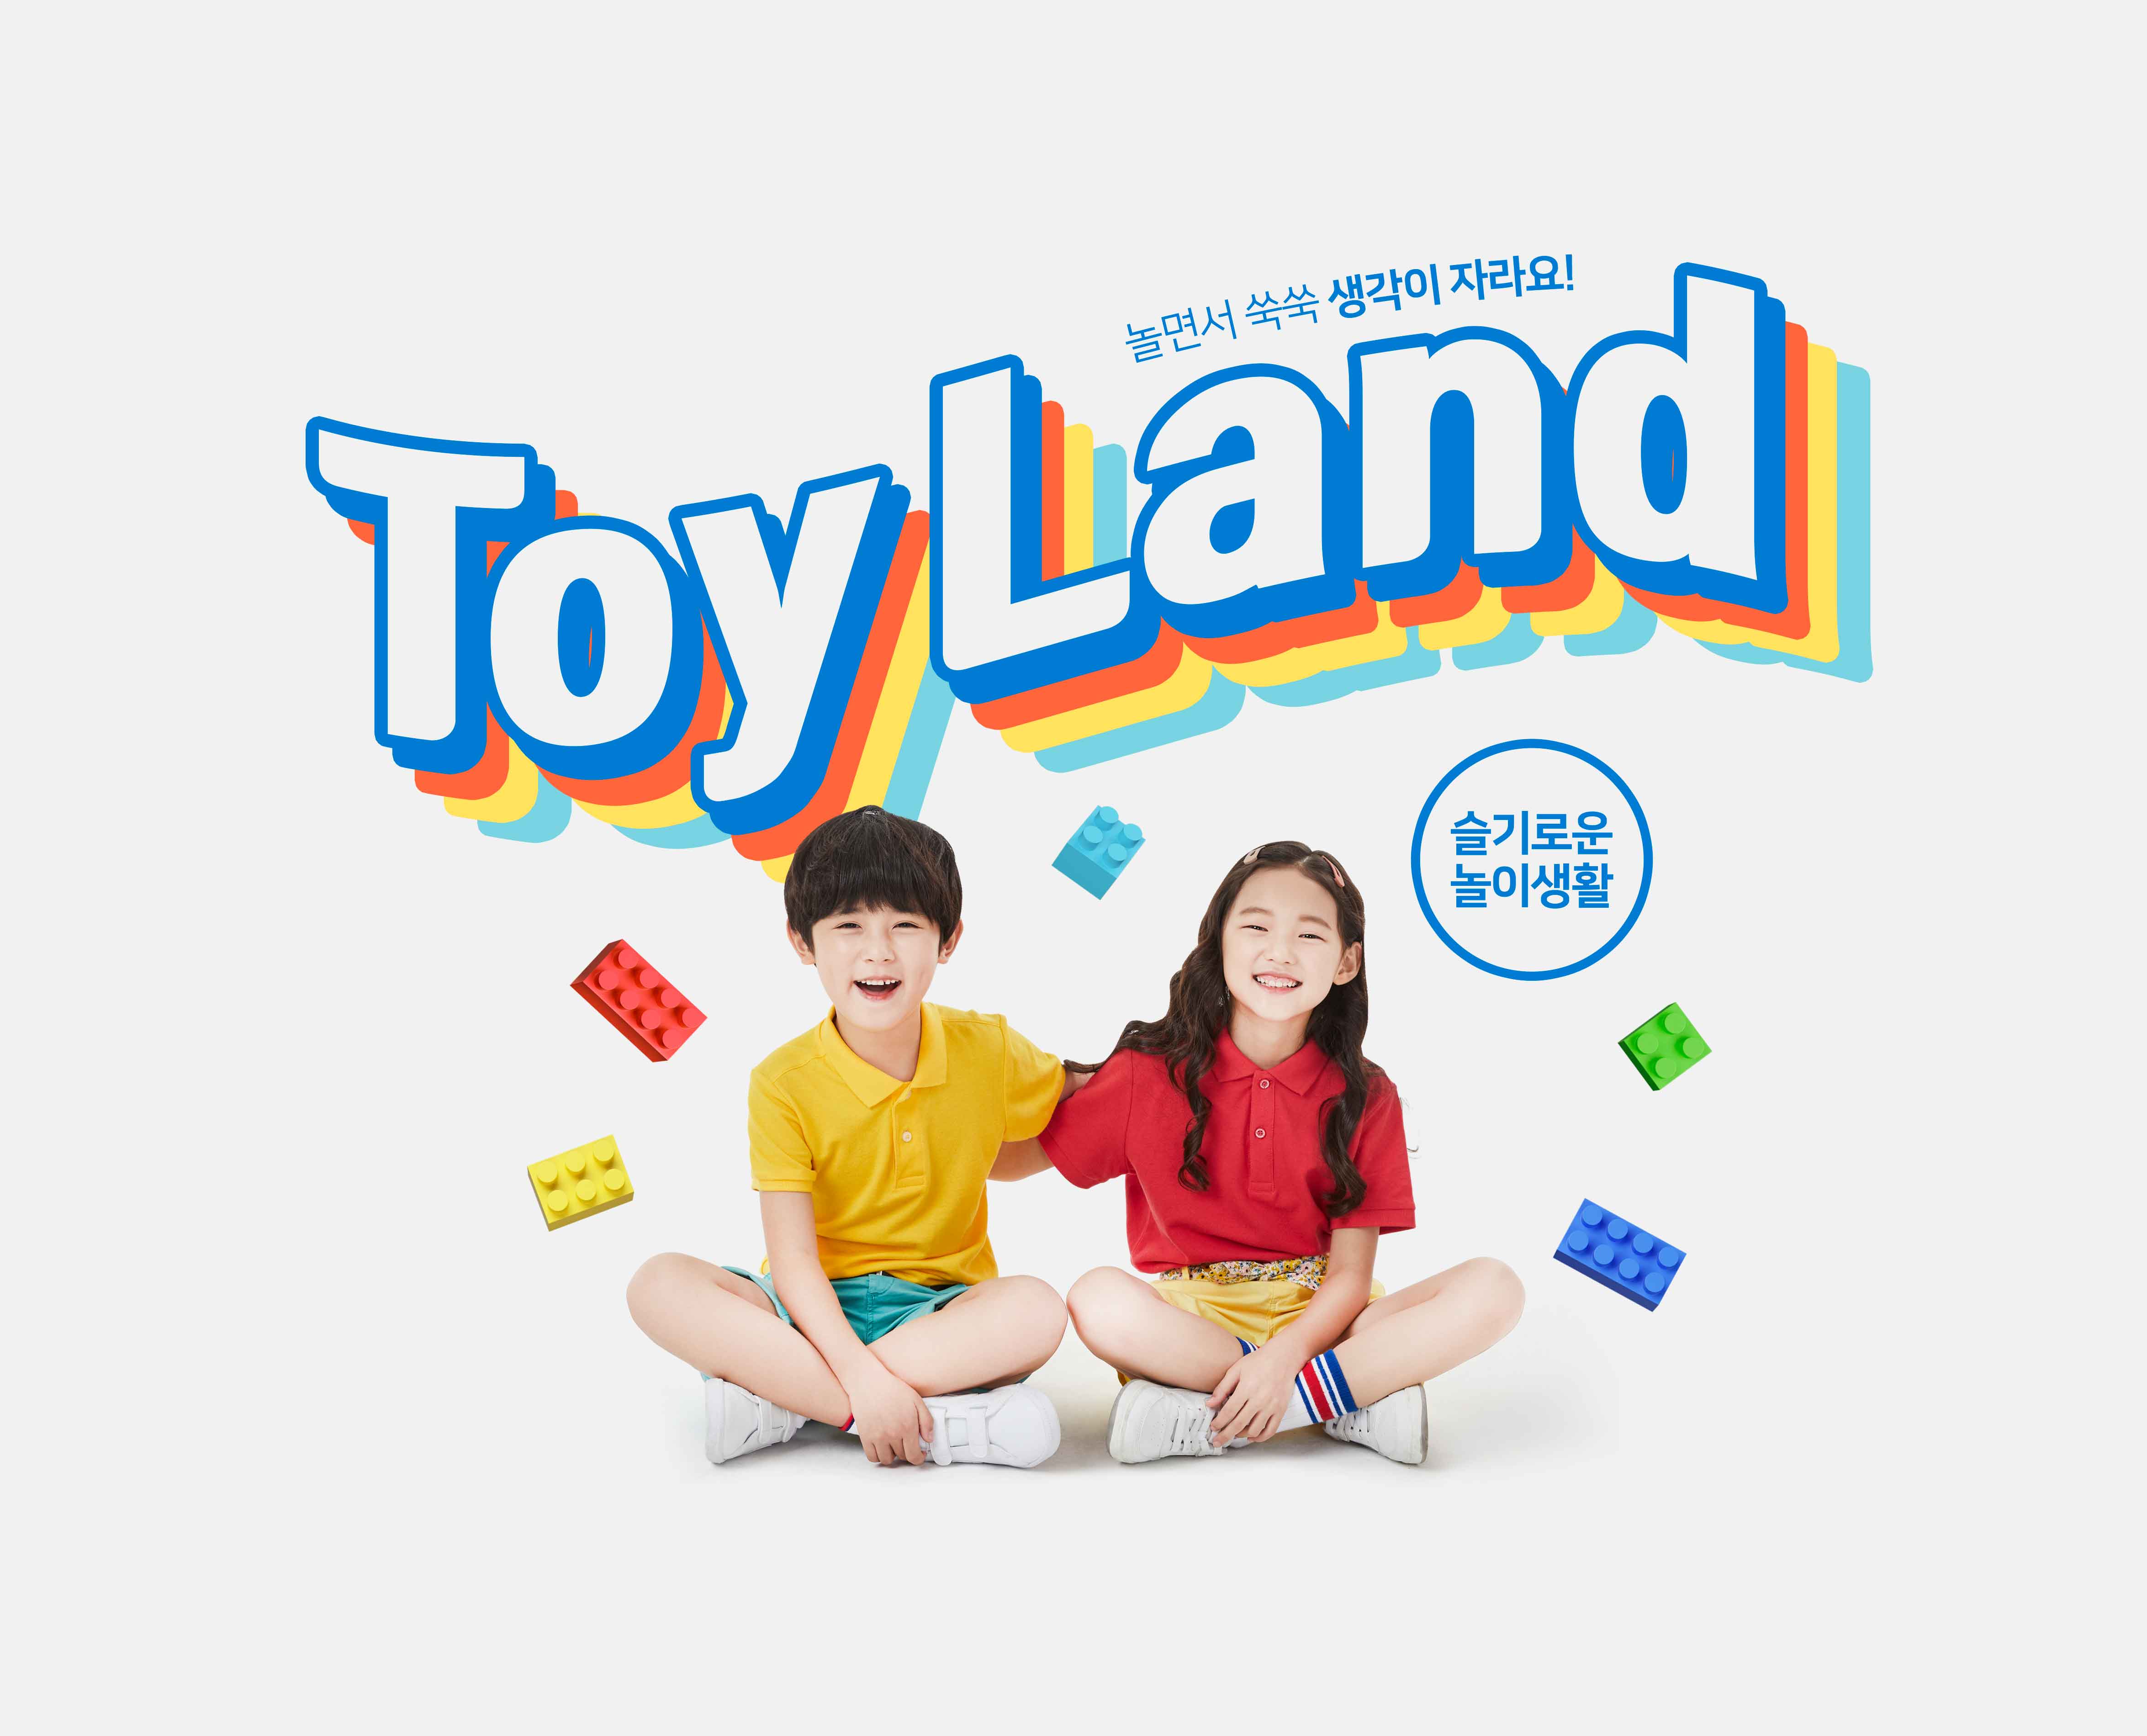 益智积木玩具游戏儿童成长主题海报PSD素材素材库精选韩国素材插图